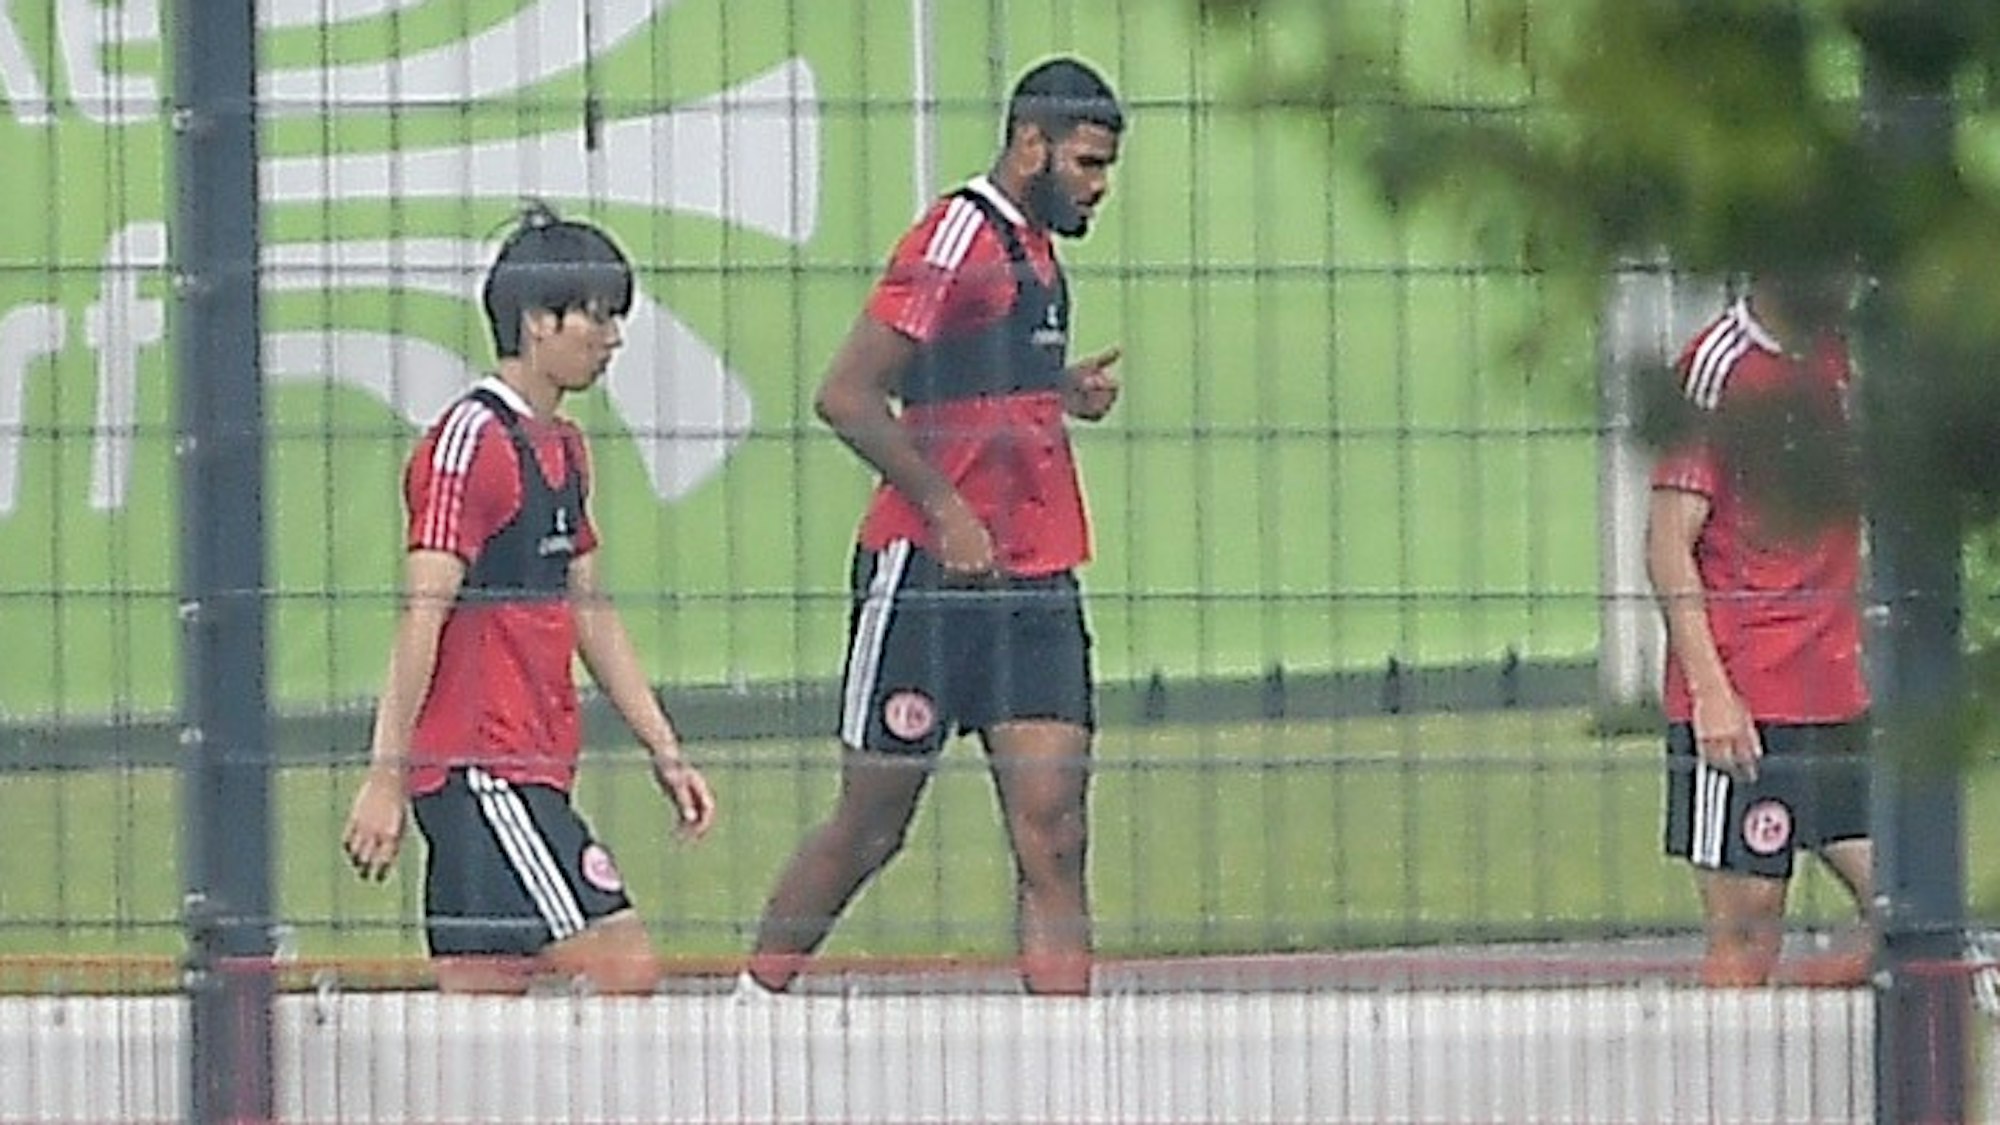 Ao Tanaka (l.) beim ersten Training mit Fortuna Düsseldorf. Neben ihm läuft Jamil Siebert.